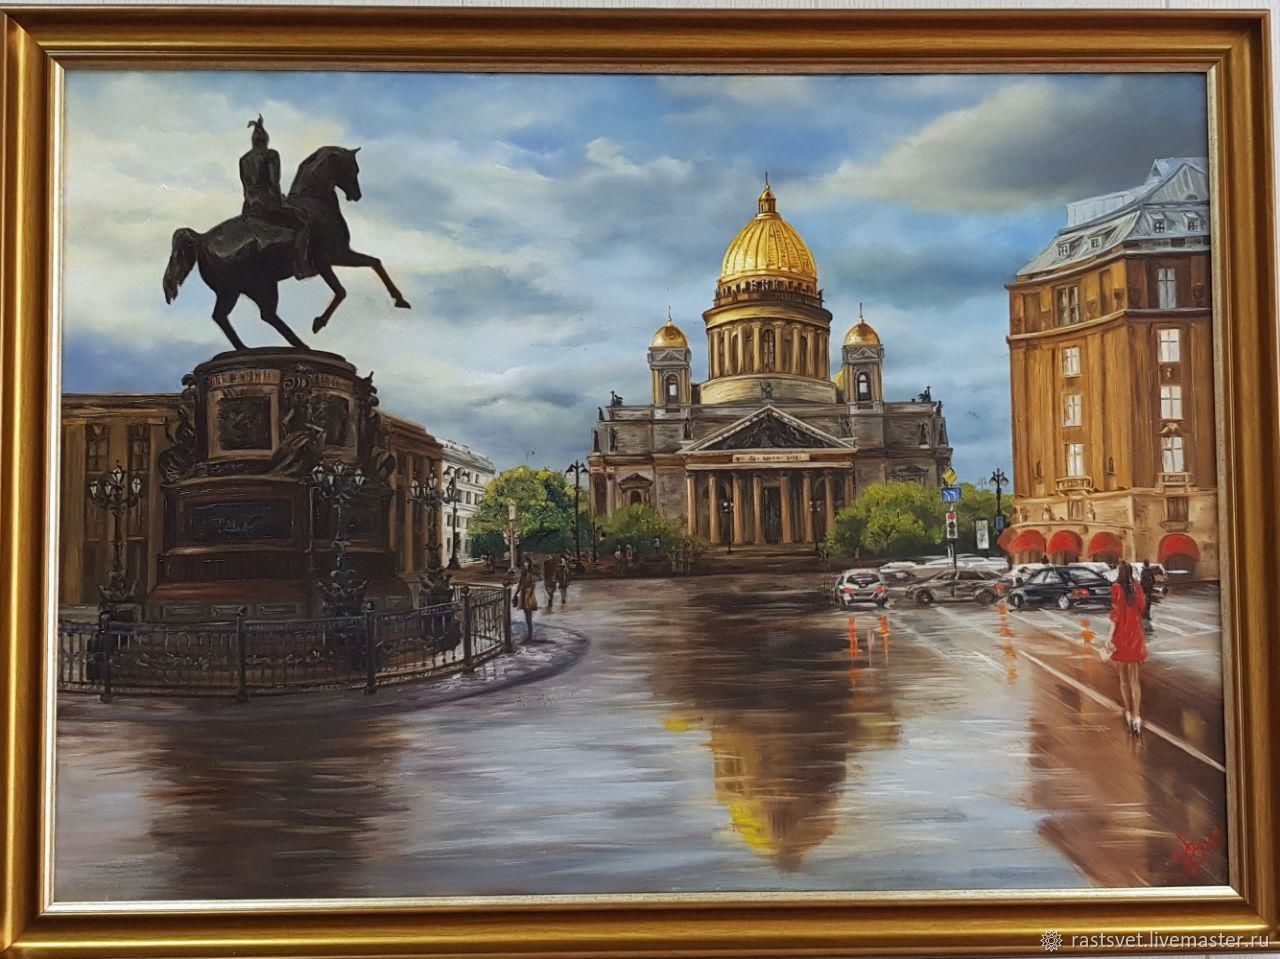 Санкт-Петербург в картинах и панно